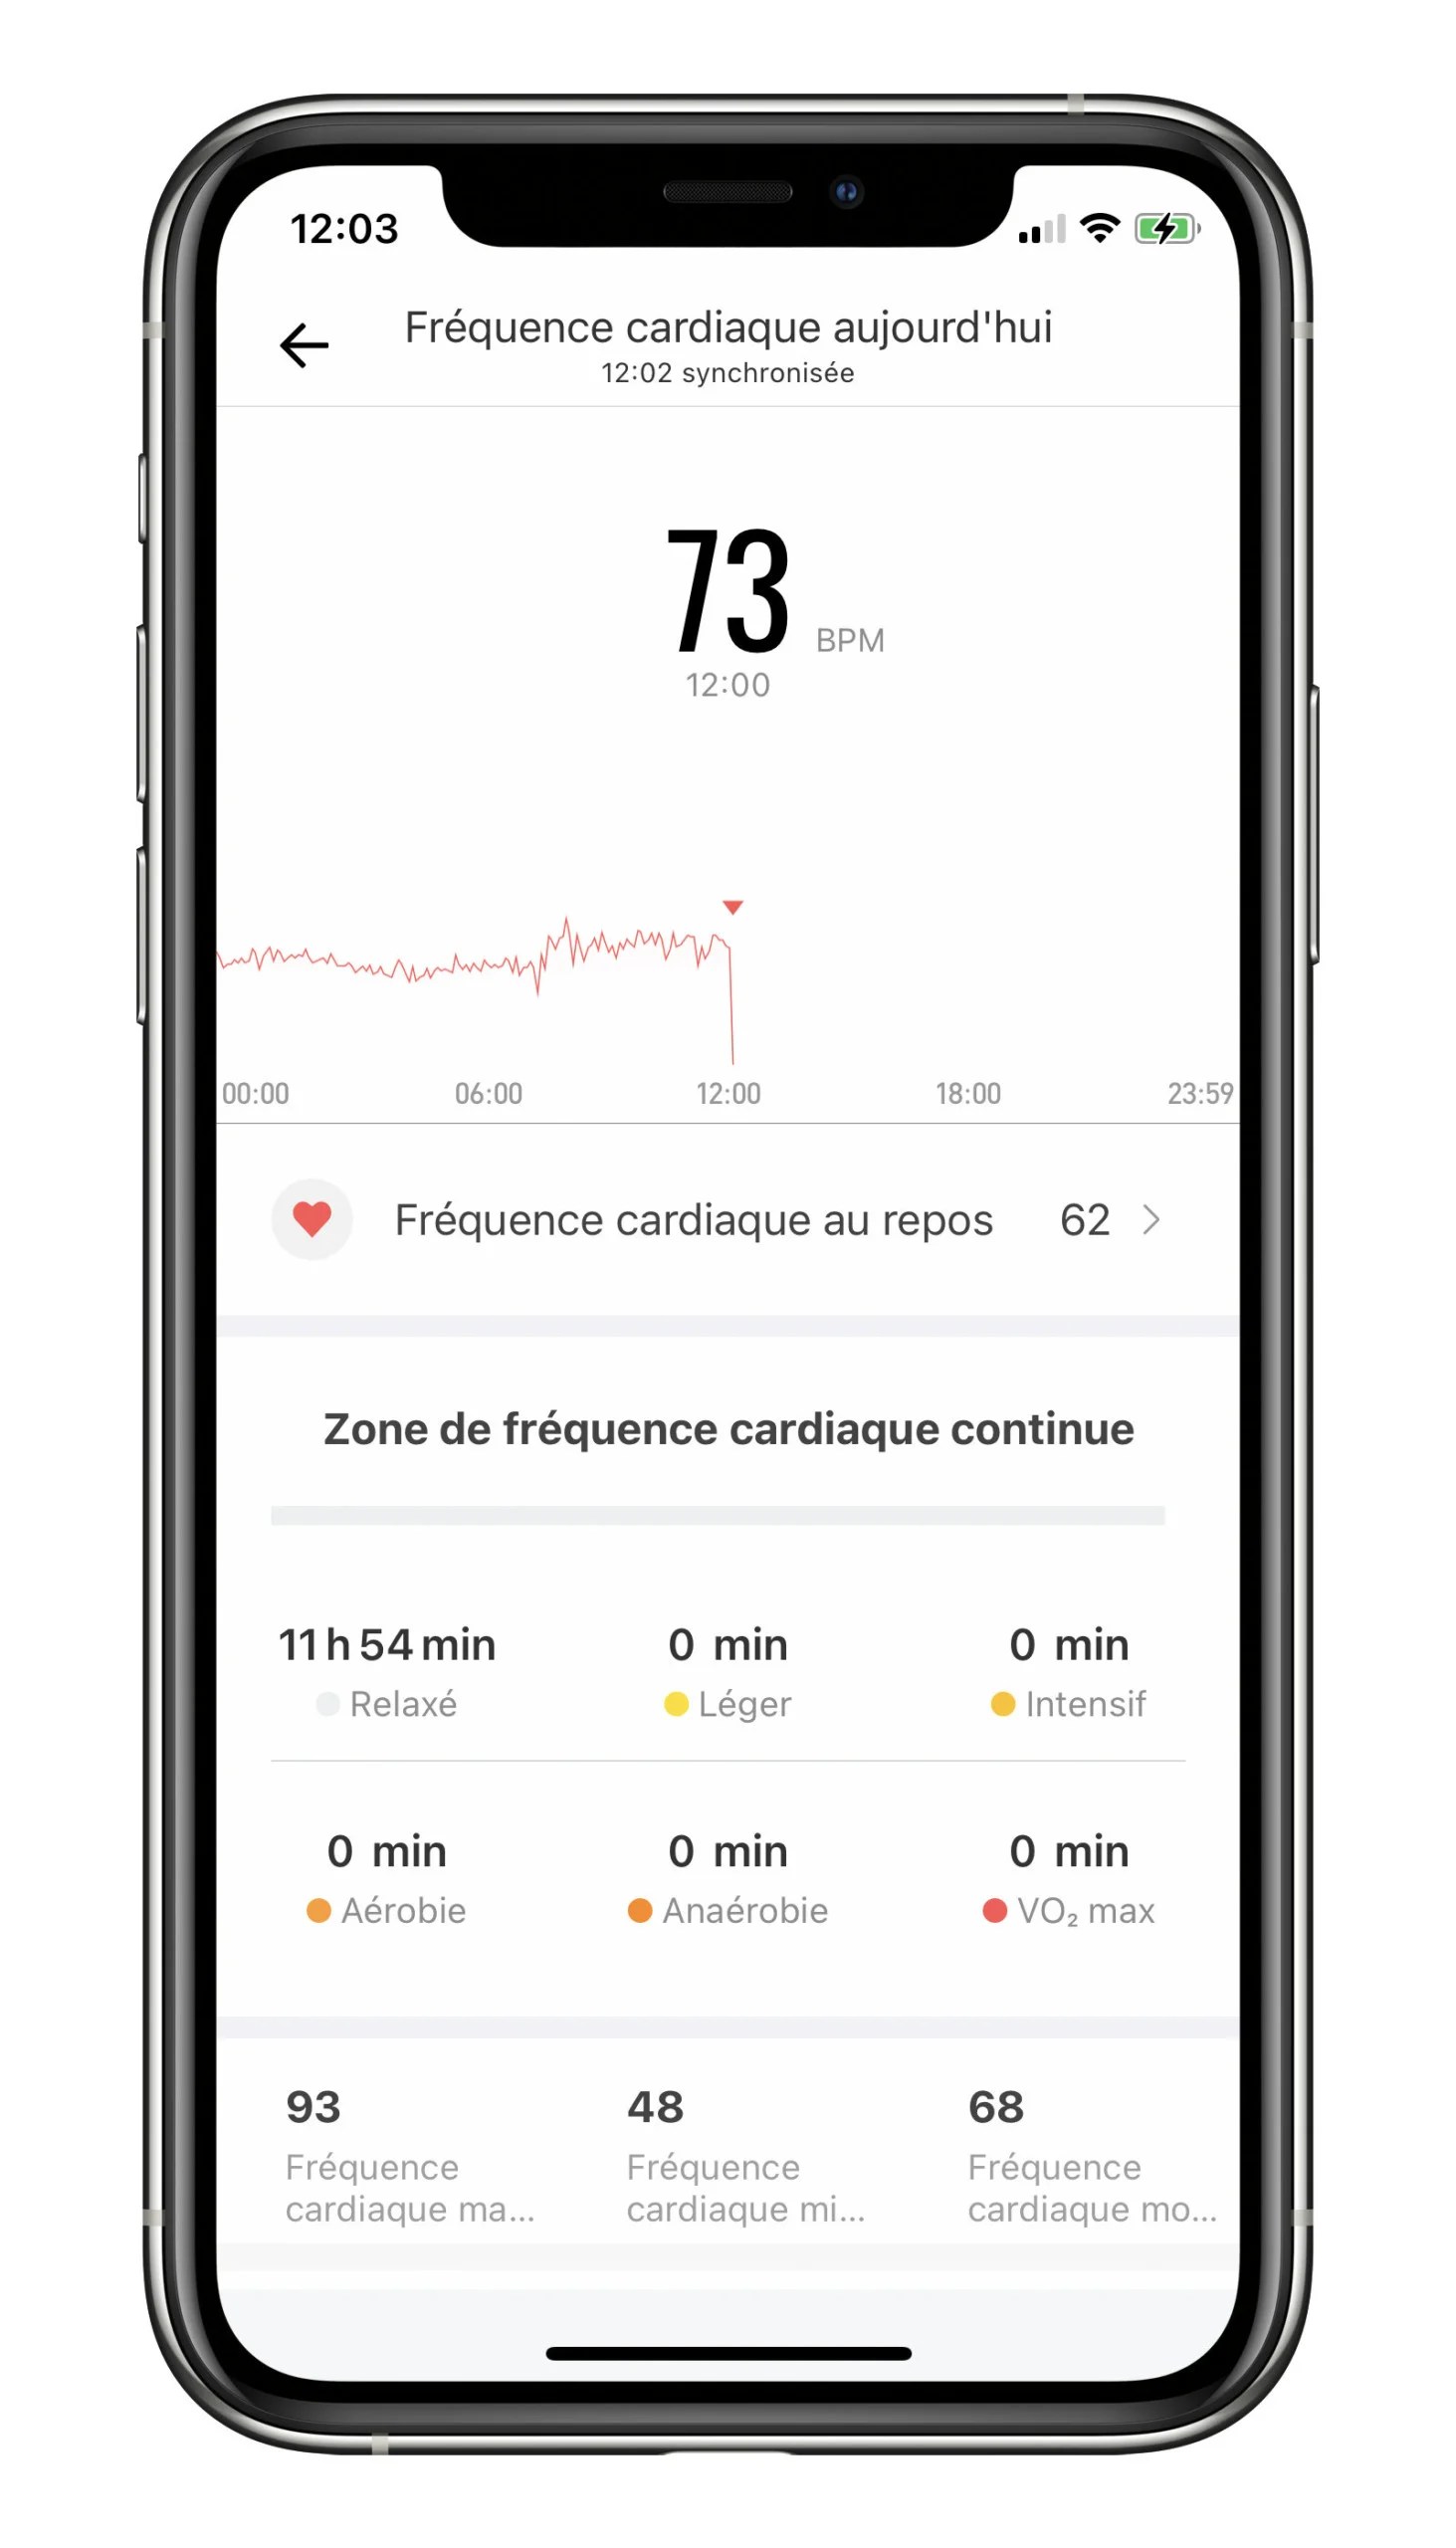 Le suivi de la fréquence cardiaque jour par jour // Source : Frandroid